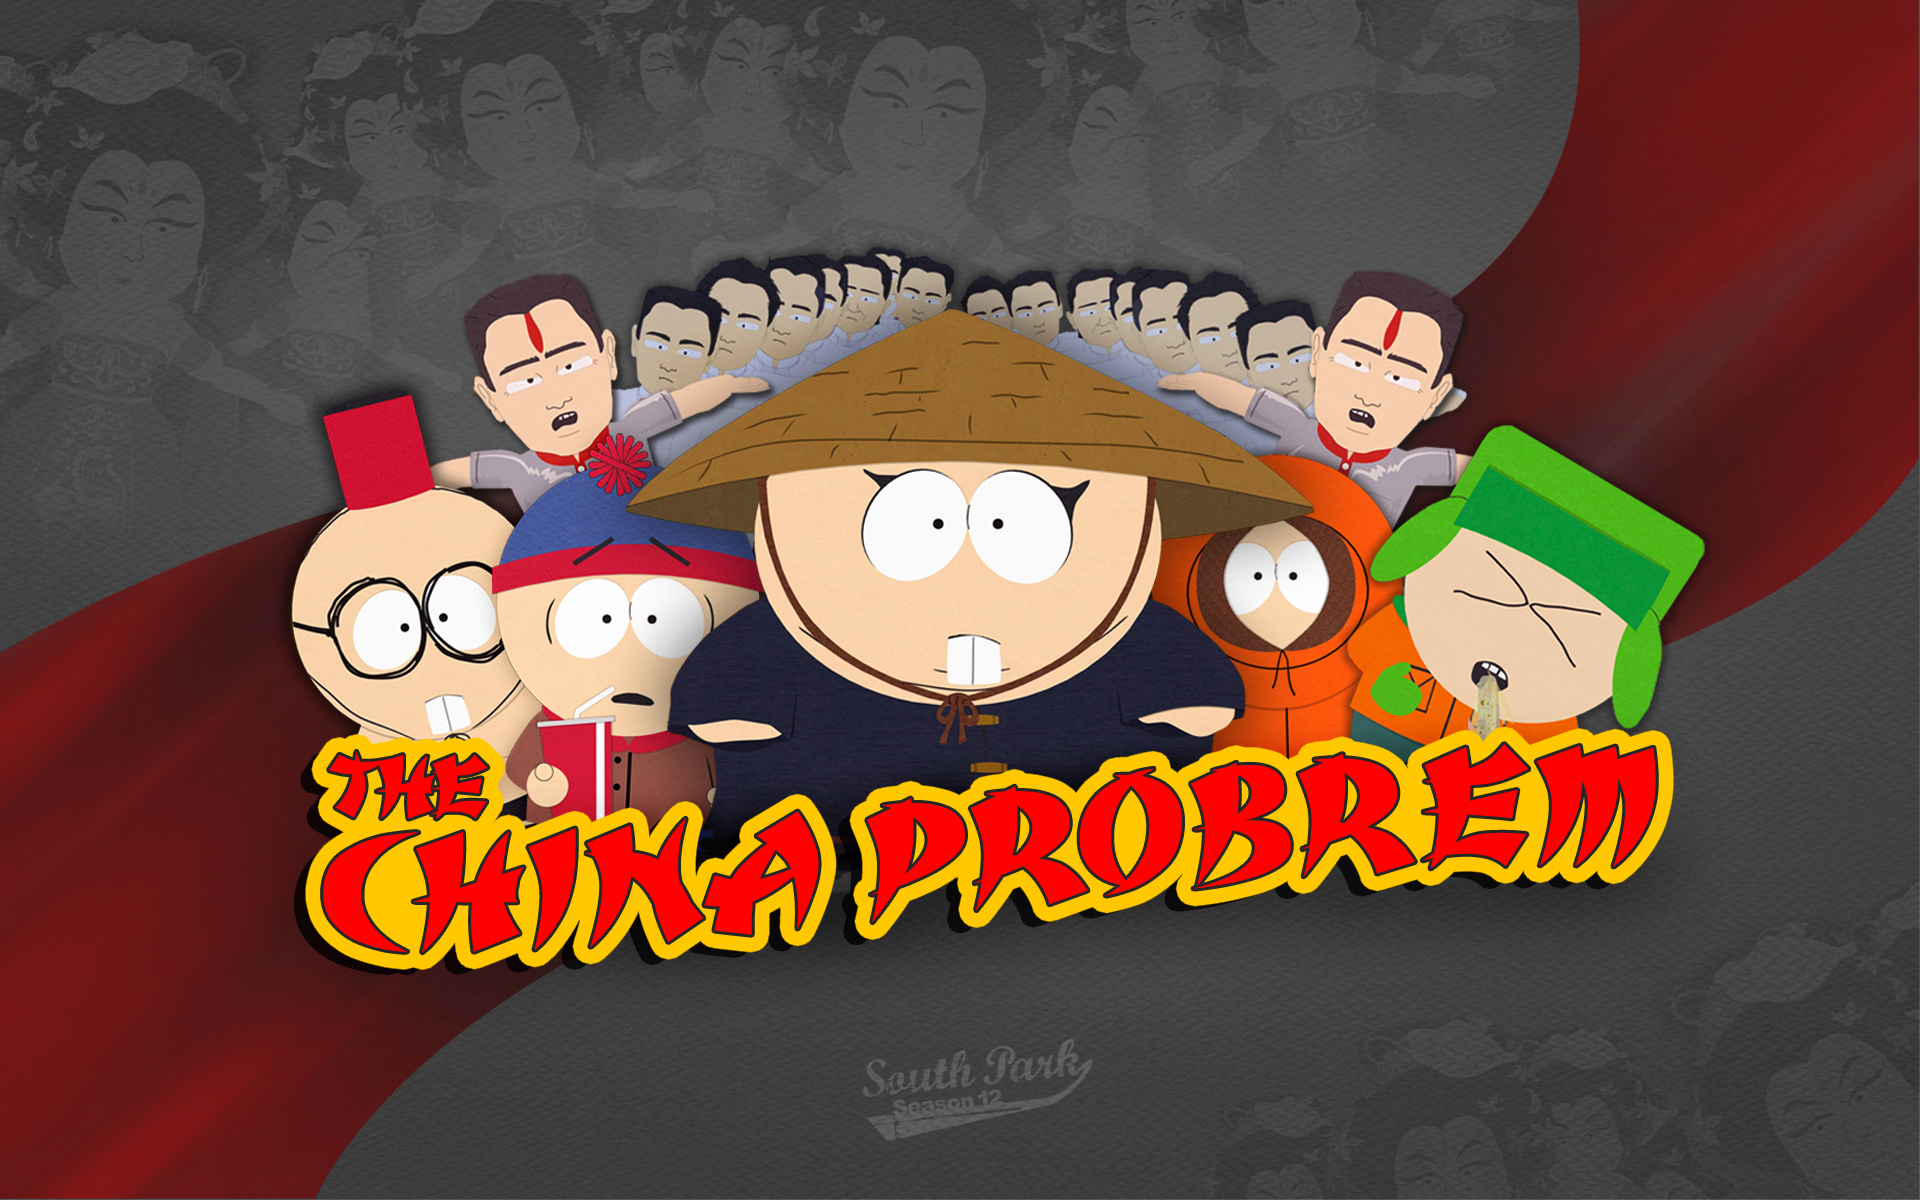 South Park China Wallpaper HD